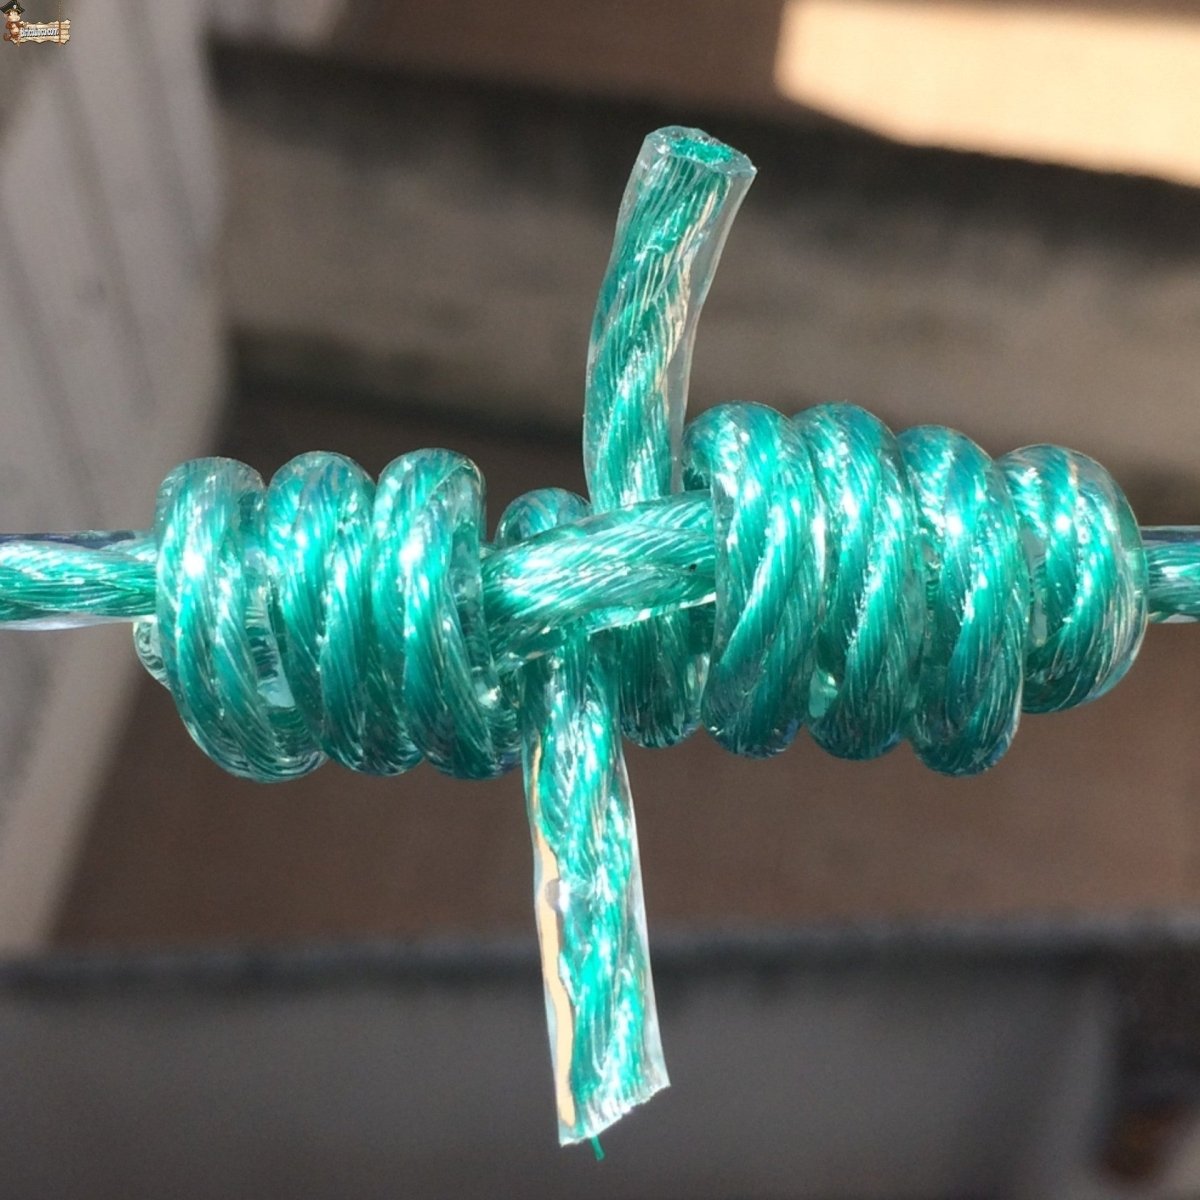 Cuerda de nailon hilo jardín exterior tendedero tendedero tendedero 10m  20-10m Cola Cuerda de nylon